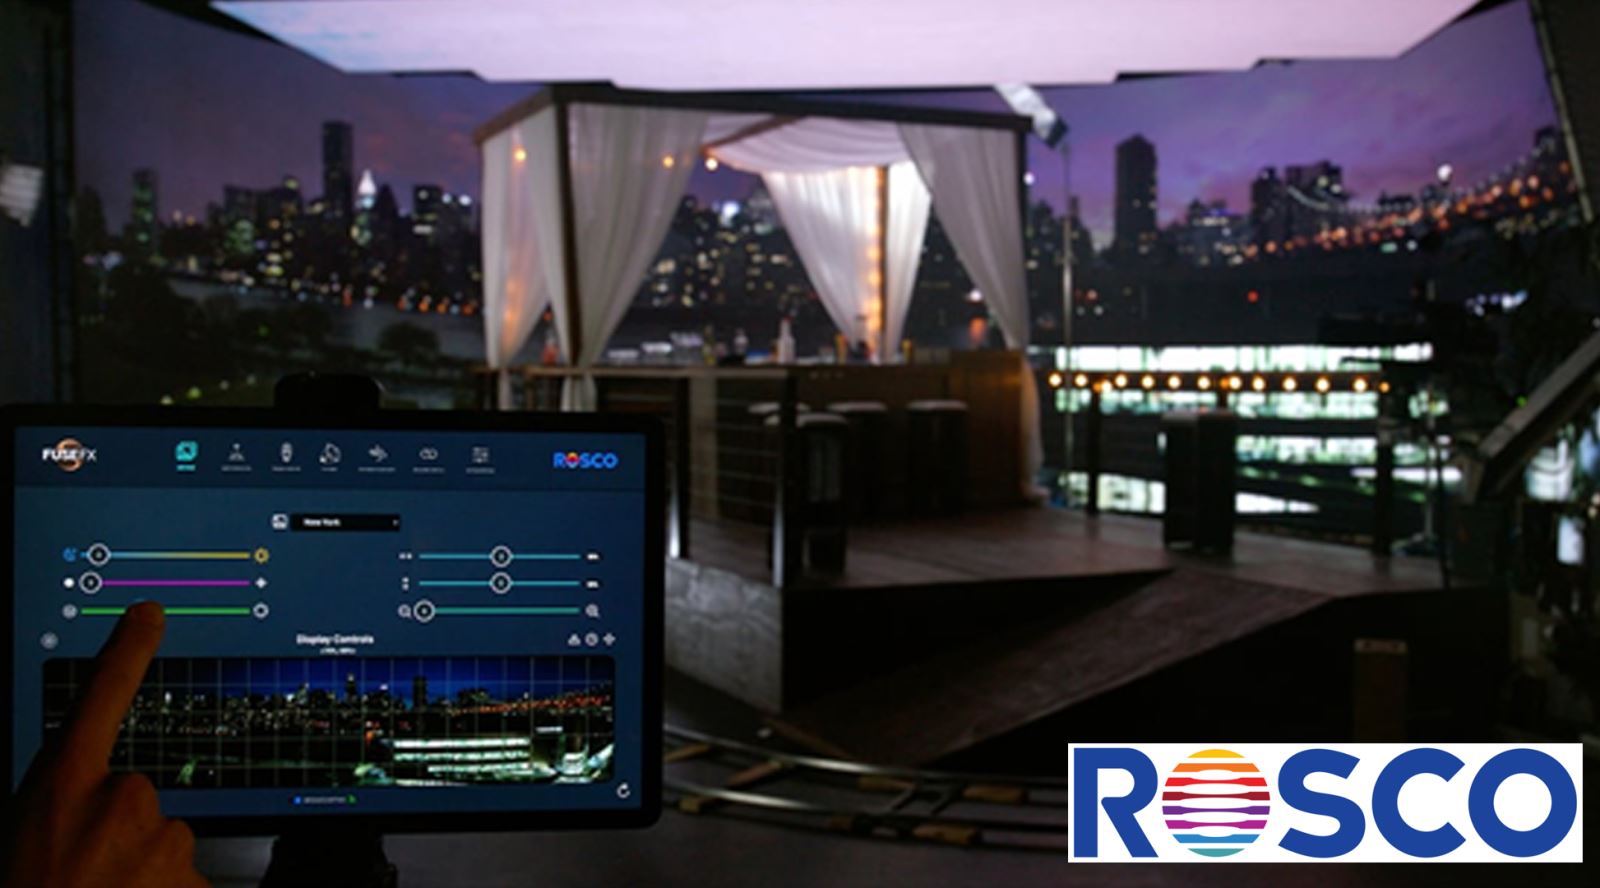 Rosco RDX Lab system